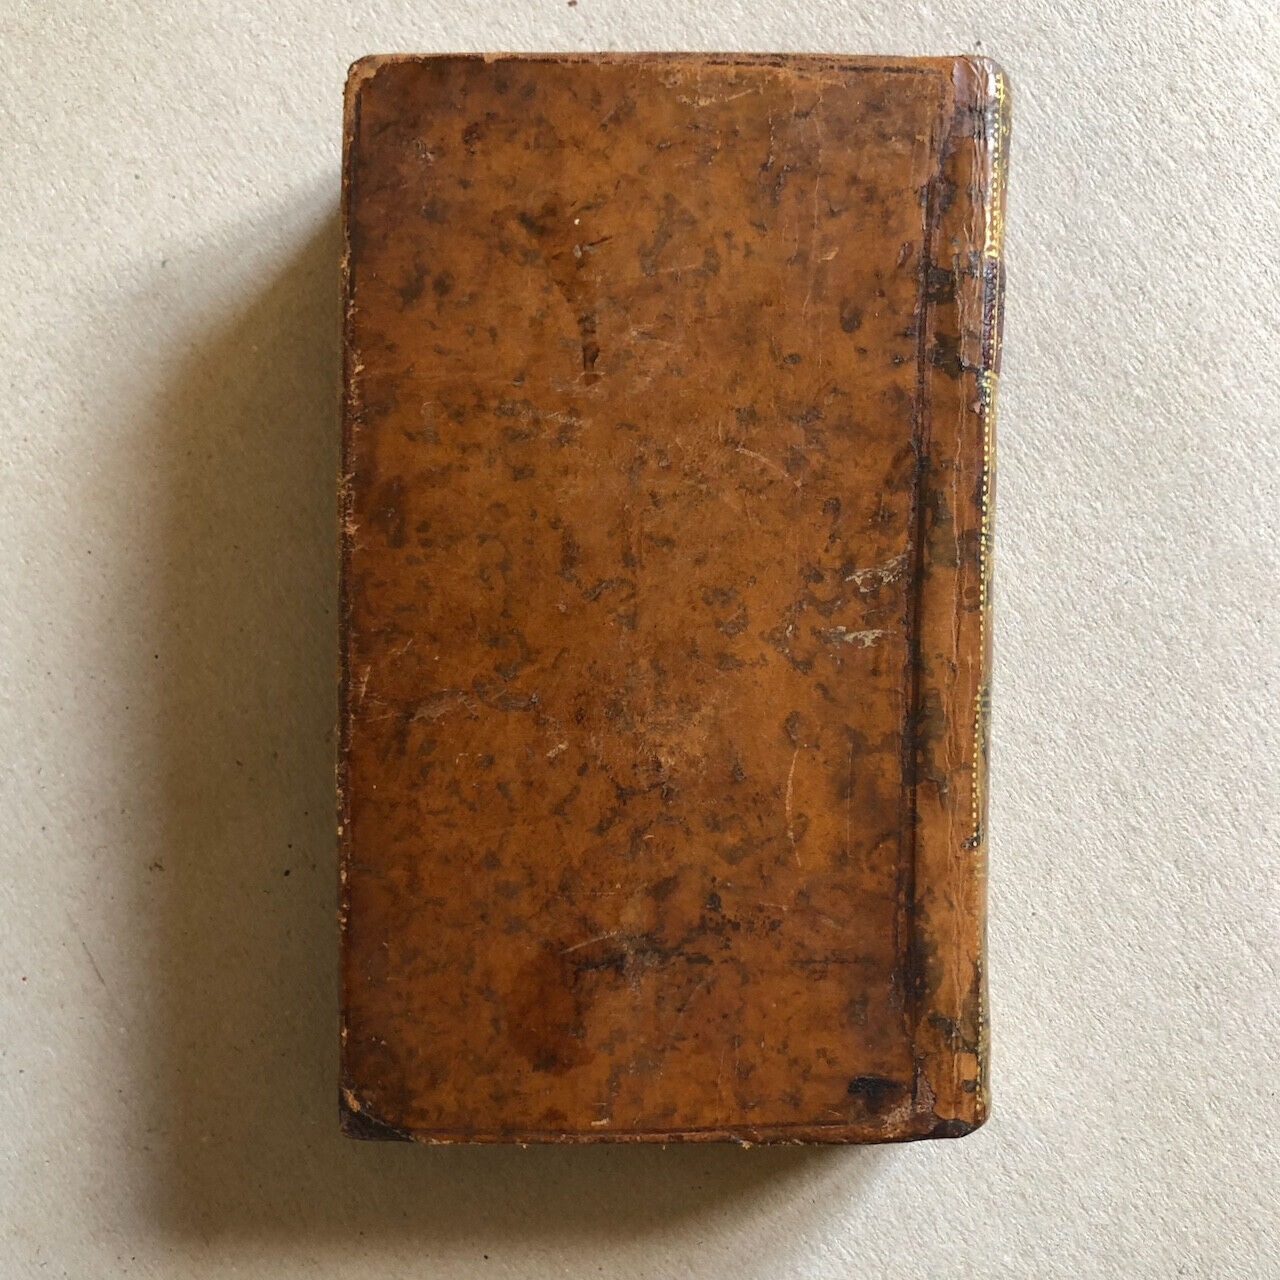 [Montesquieu] — Lettres persanes, relié avec Lettres turques — Marteau — 1744.